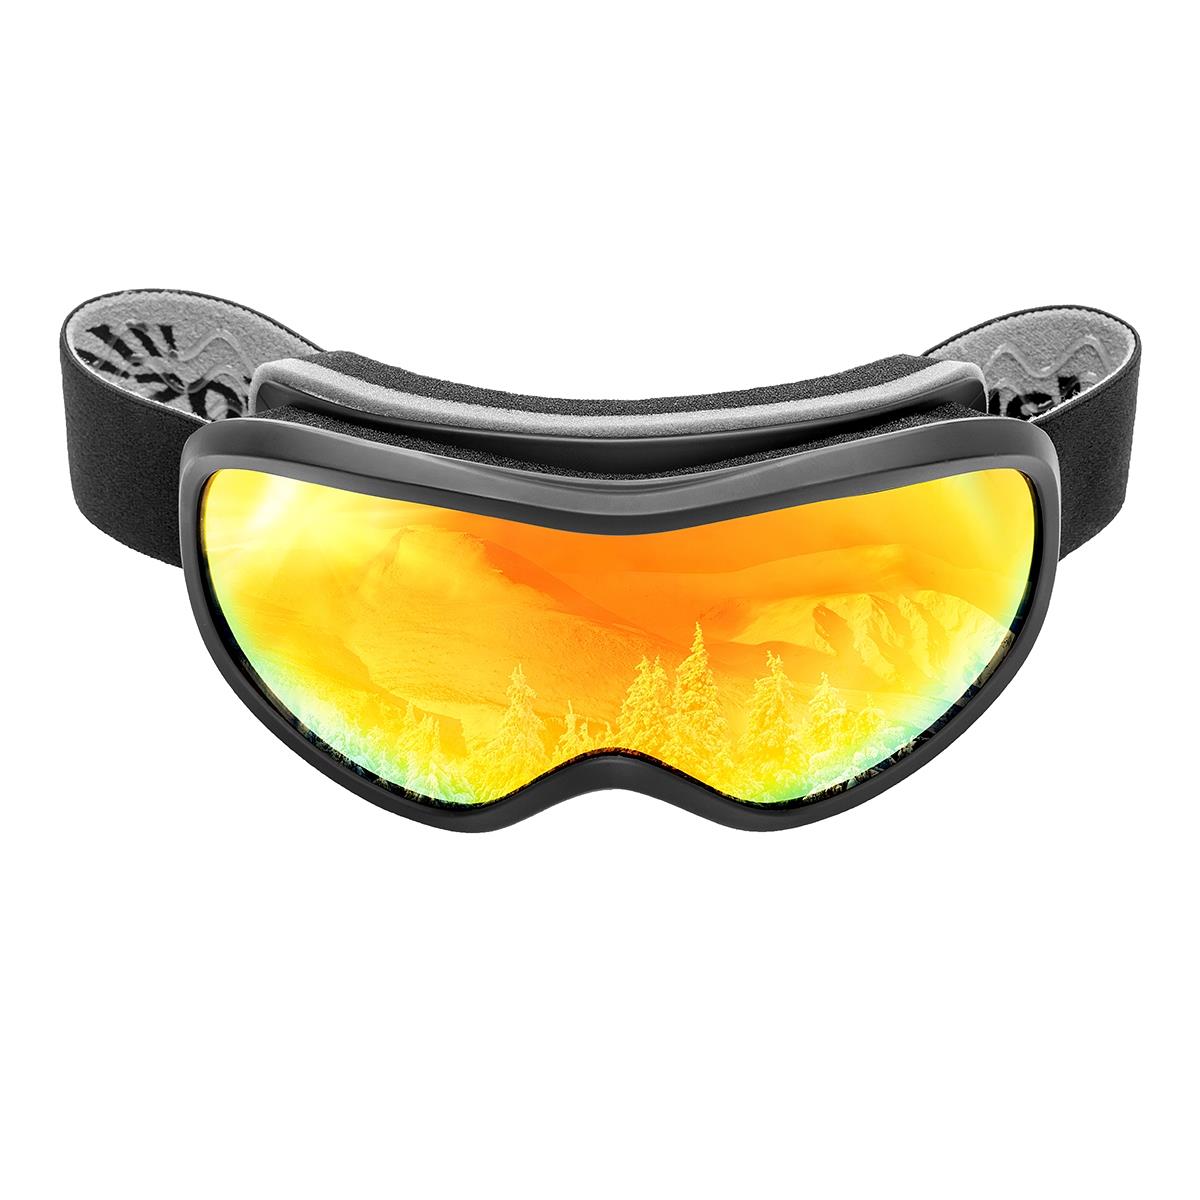 Очки горнолыжные HS-HX-043 Helios очки спортивные